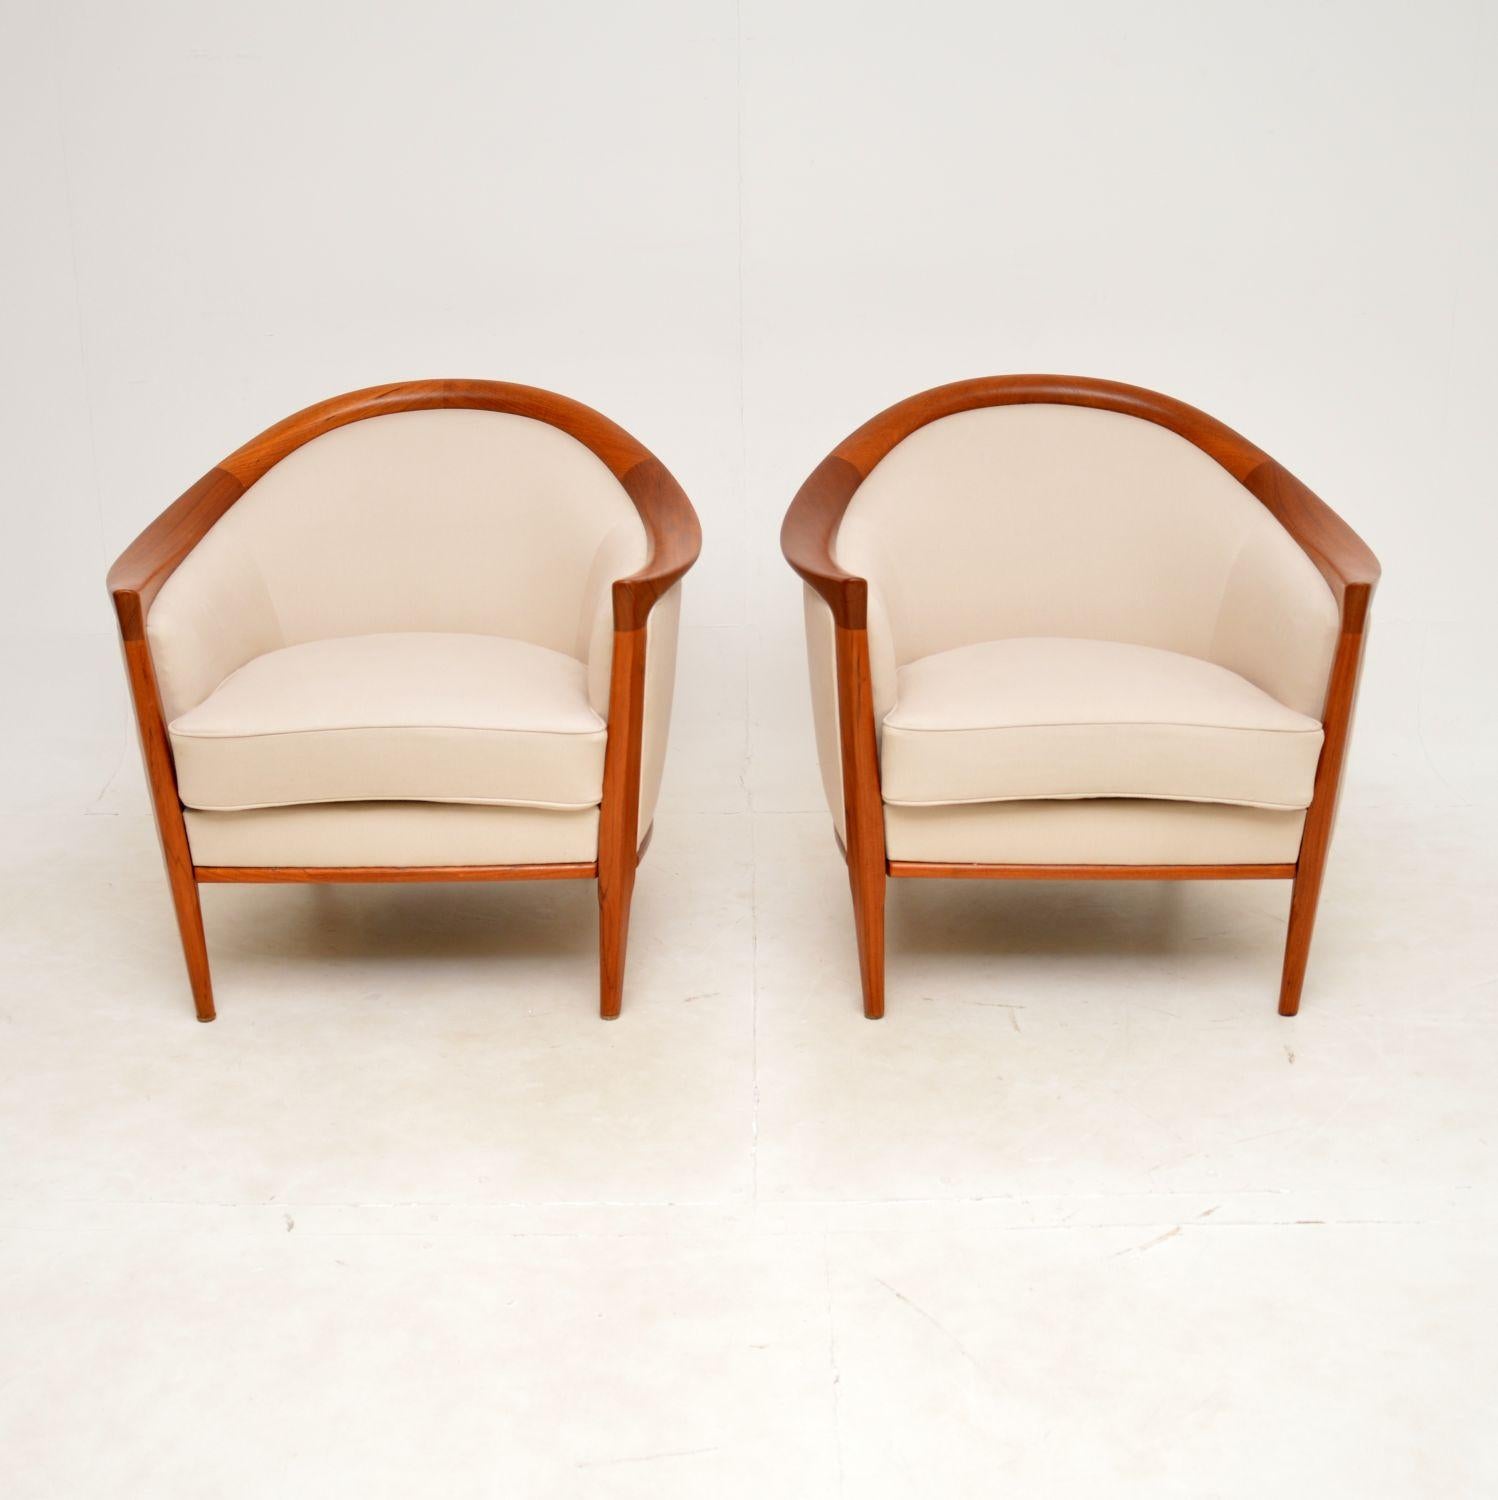 Ein absolut atemberaubendes Paar schwedischer Vintage-Sessel aus Teakholz. Sie wurden von Bertil Fridhagen entworfen und in den 1960er Jahren von Broderna Andersson hergestellt.

Die Qualität ist hervorragend, die massiven Teakholzrahmen haben